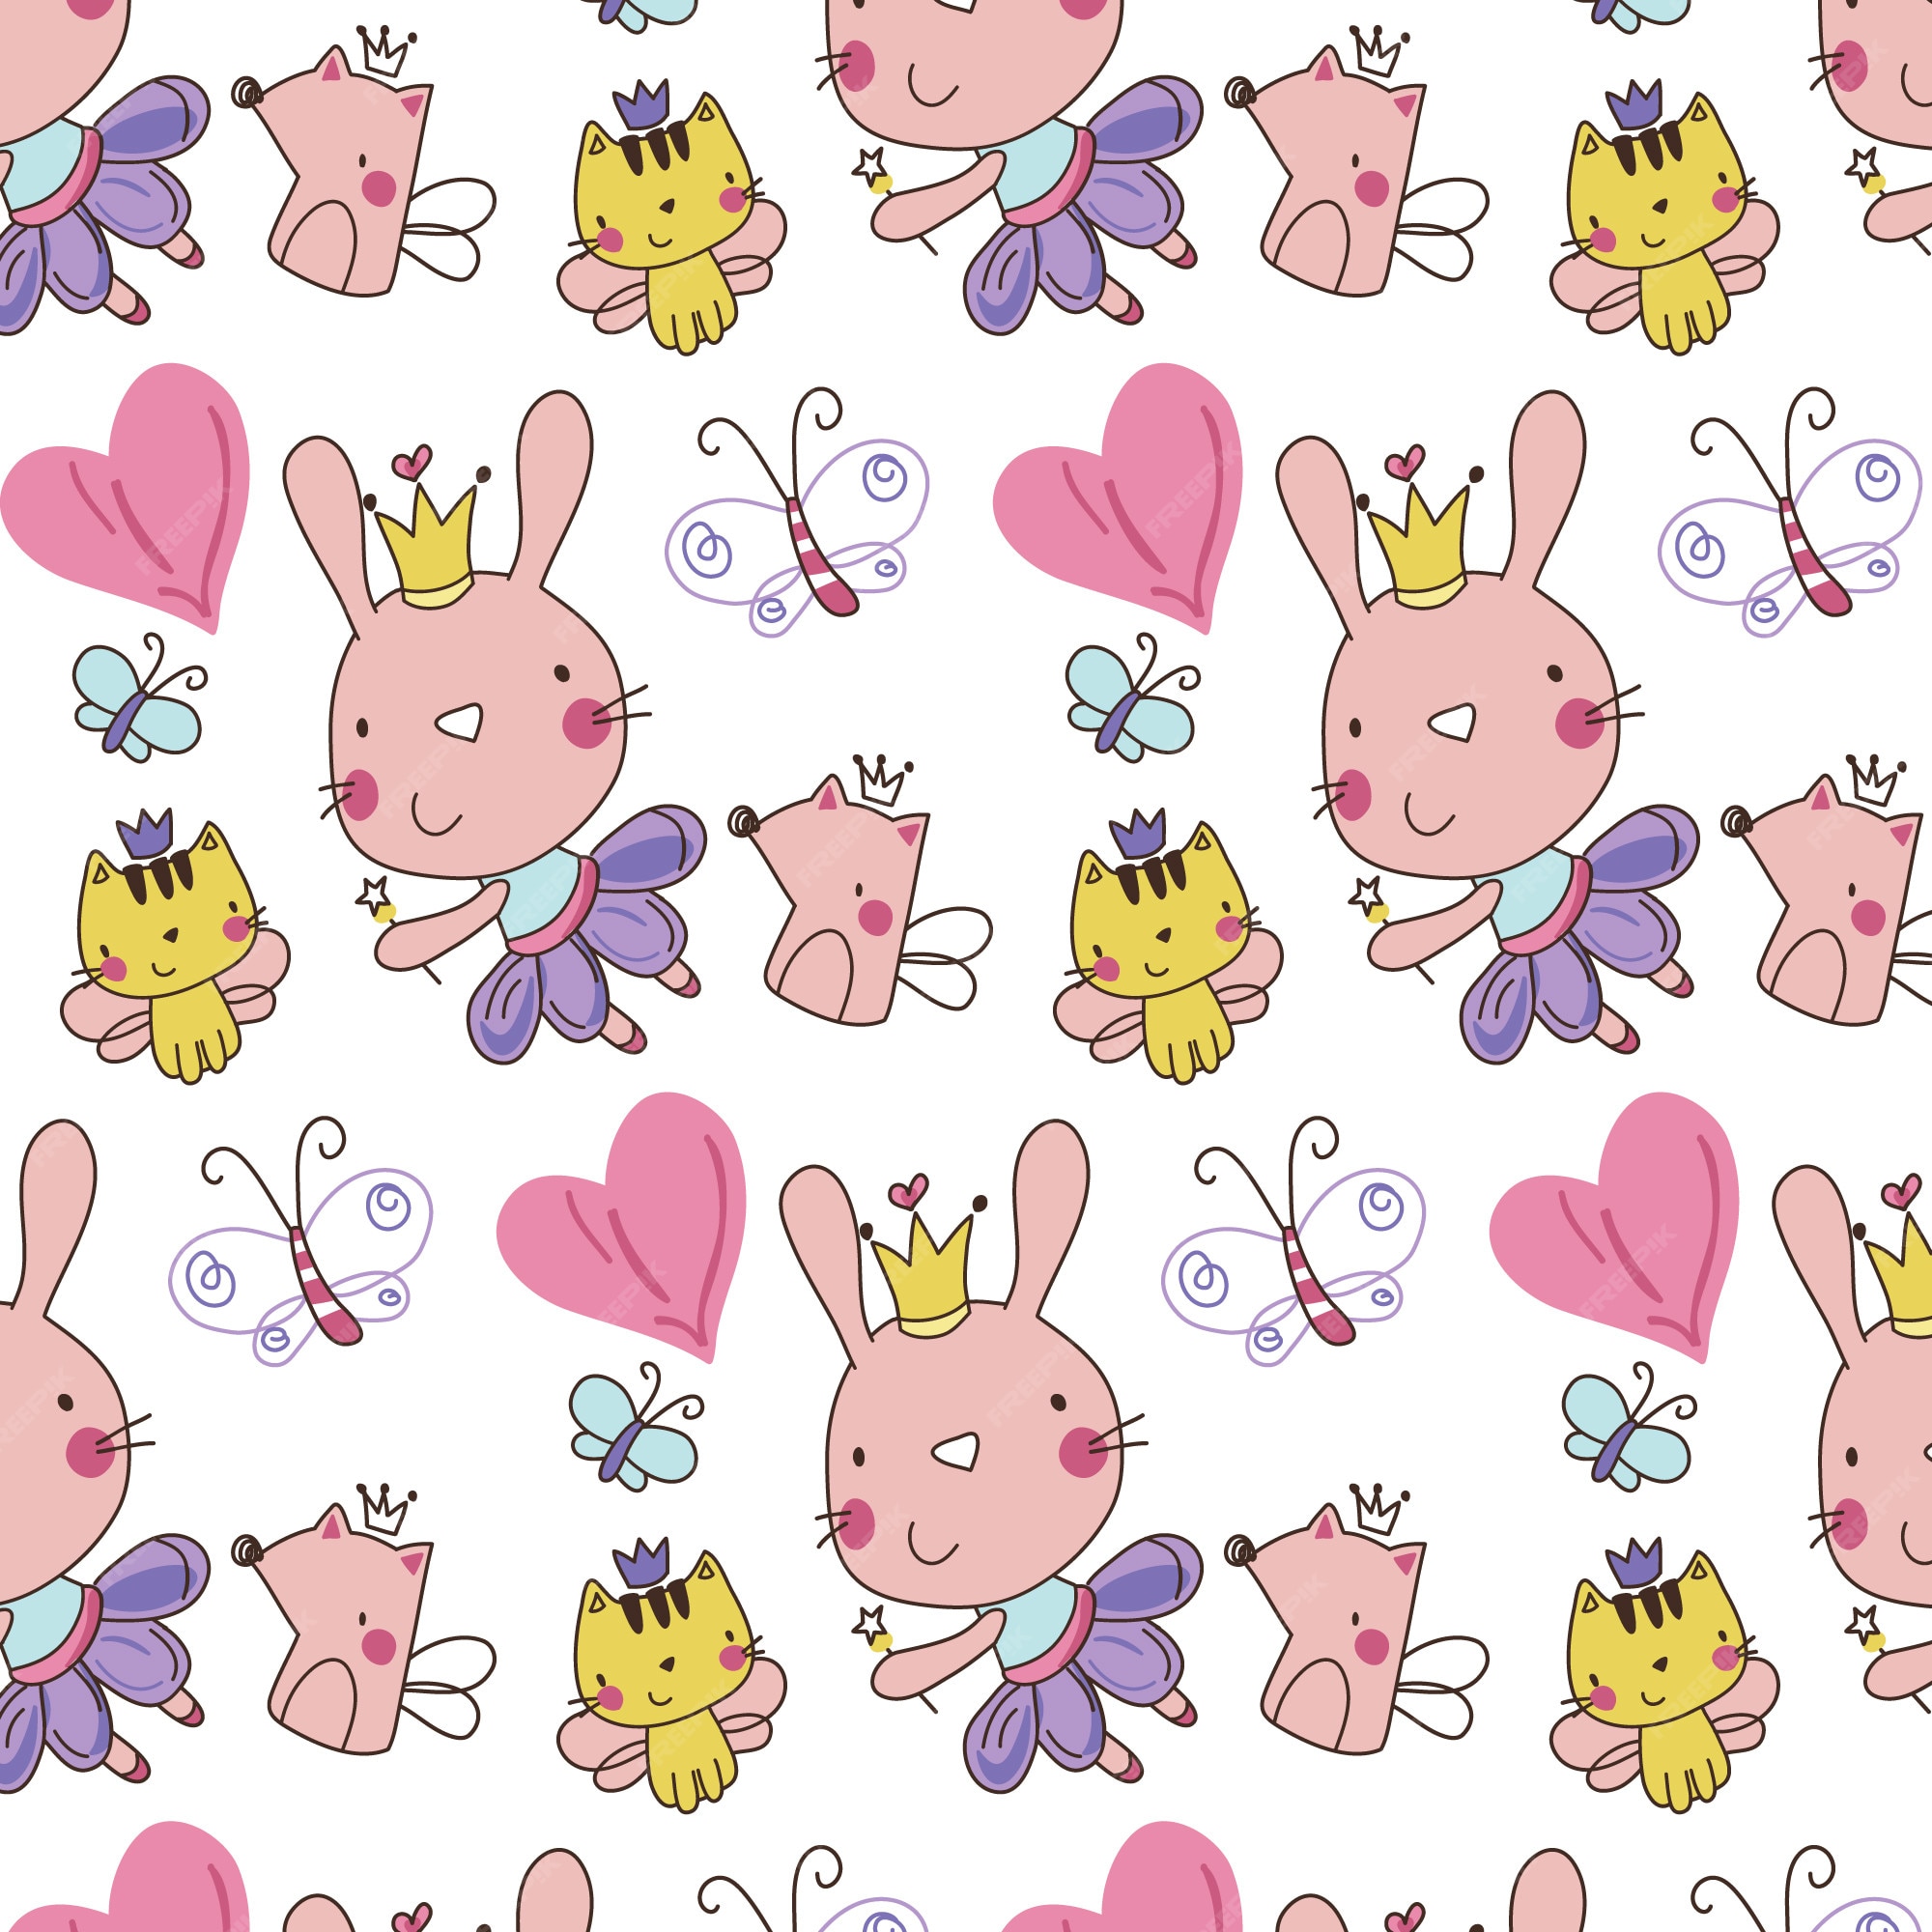 Rabbit pattern background: Gói gọn niềm yêu thích động vật và phong cách tối giản, hình nền thỏ giúp bạn tạo điểm nhấn ngộ nghĩnh cho màn hình điện thoại hoặc máy tính bảng.